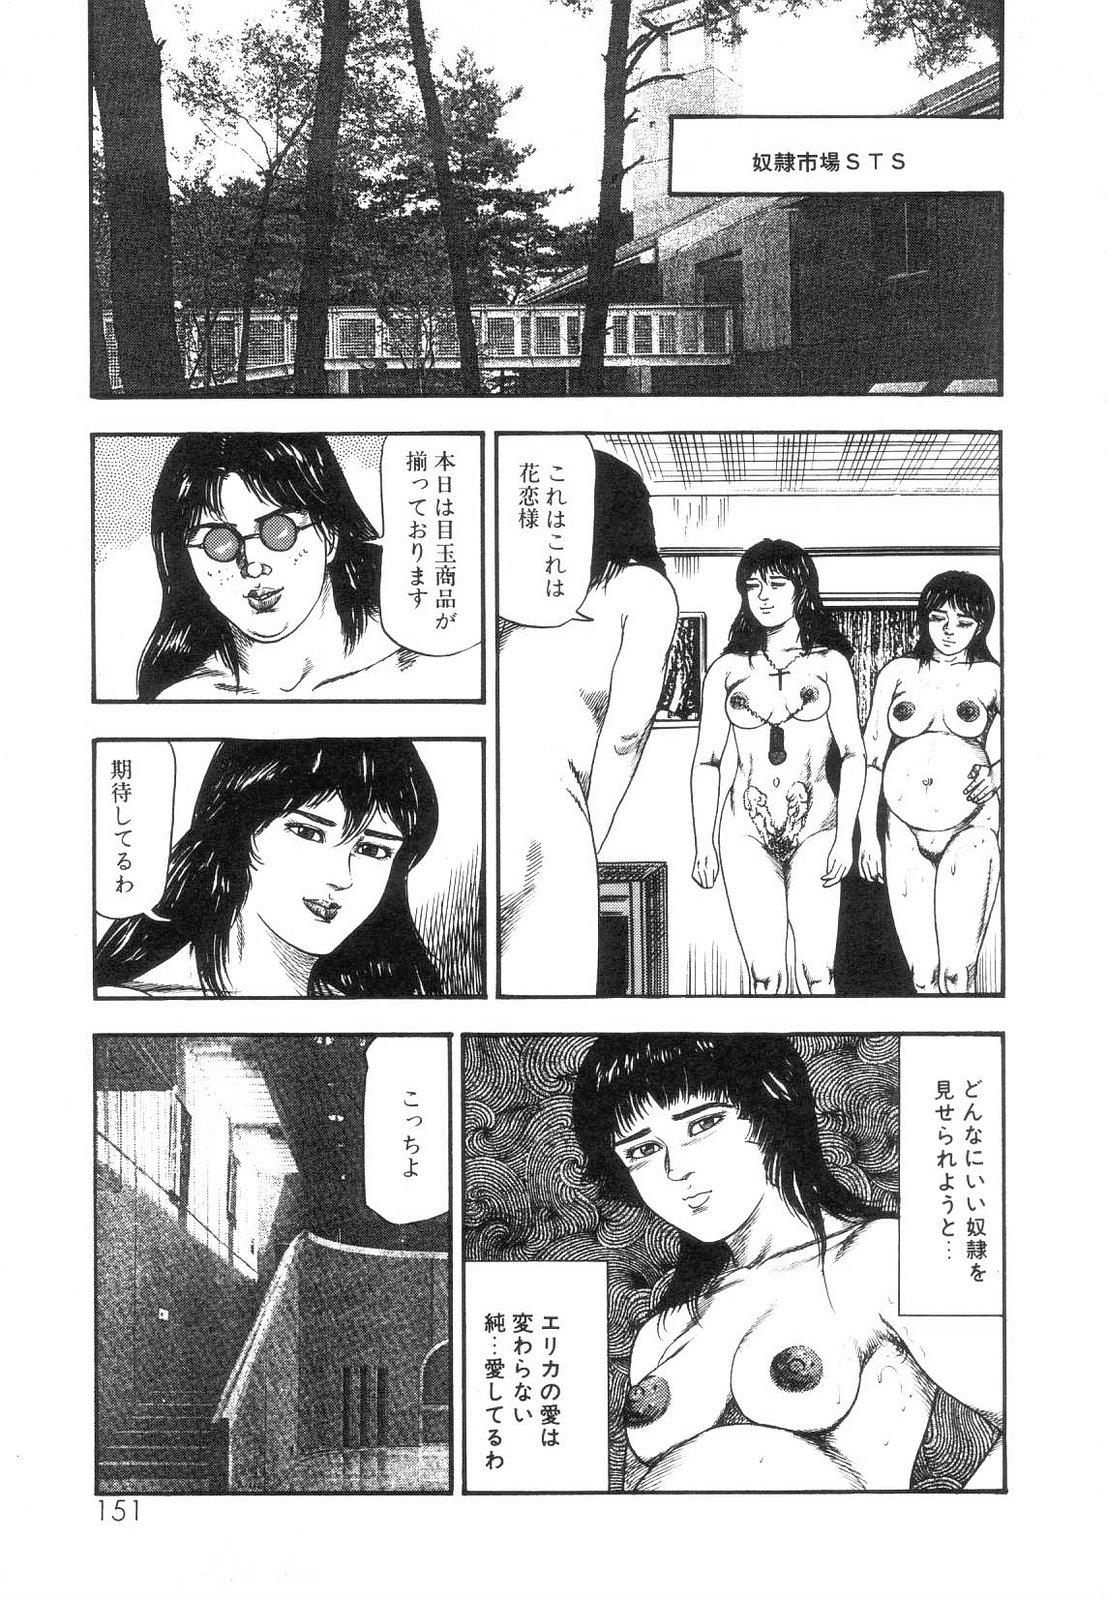 Shiro no Mokushiroku Vol. 5 - Ninshoujo Erika no Shou 152